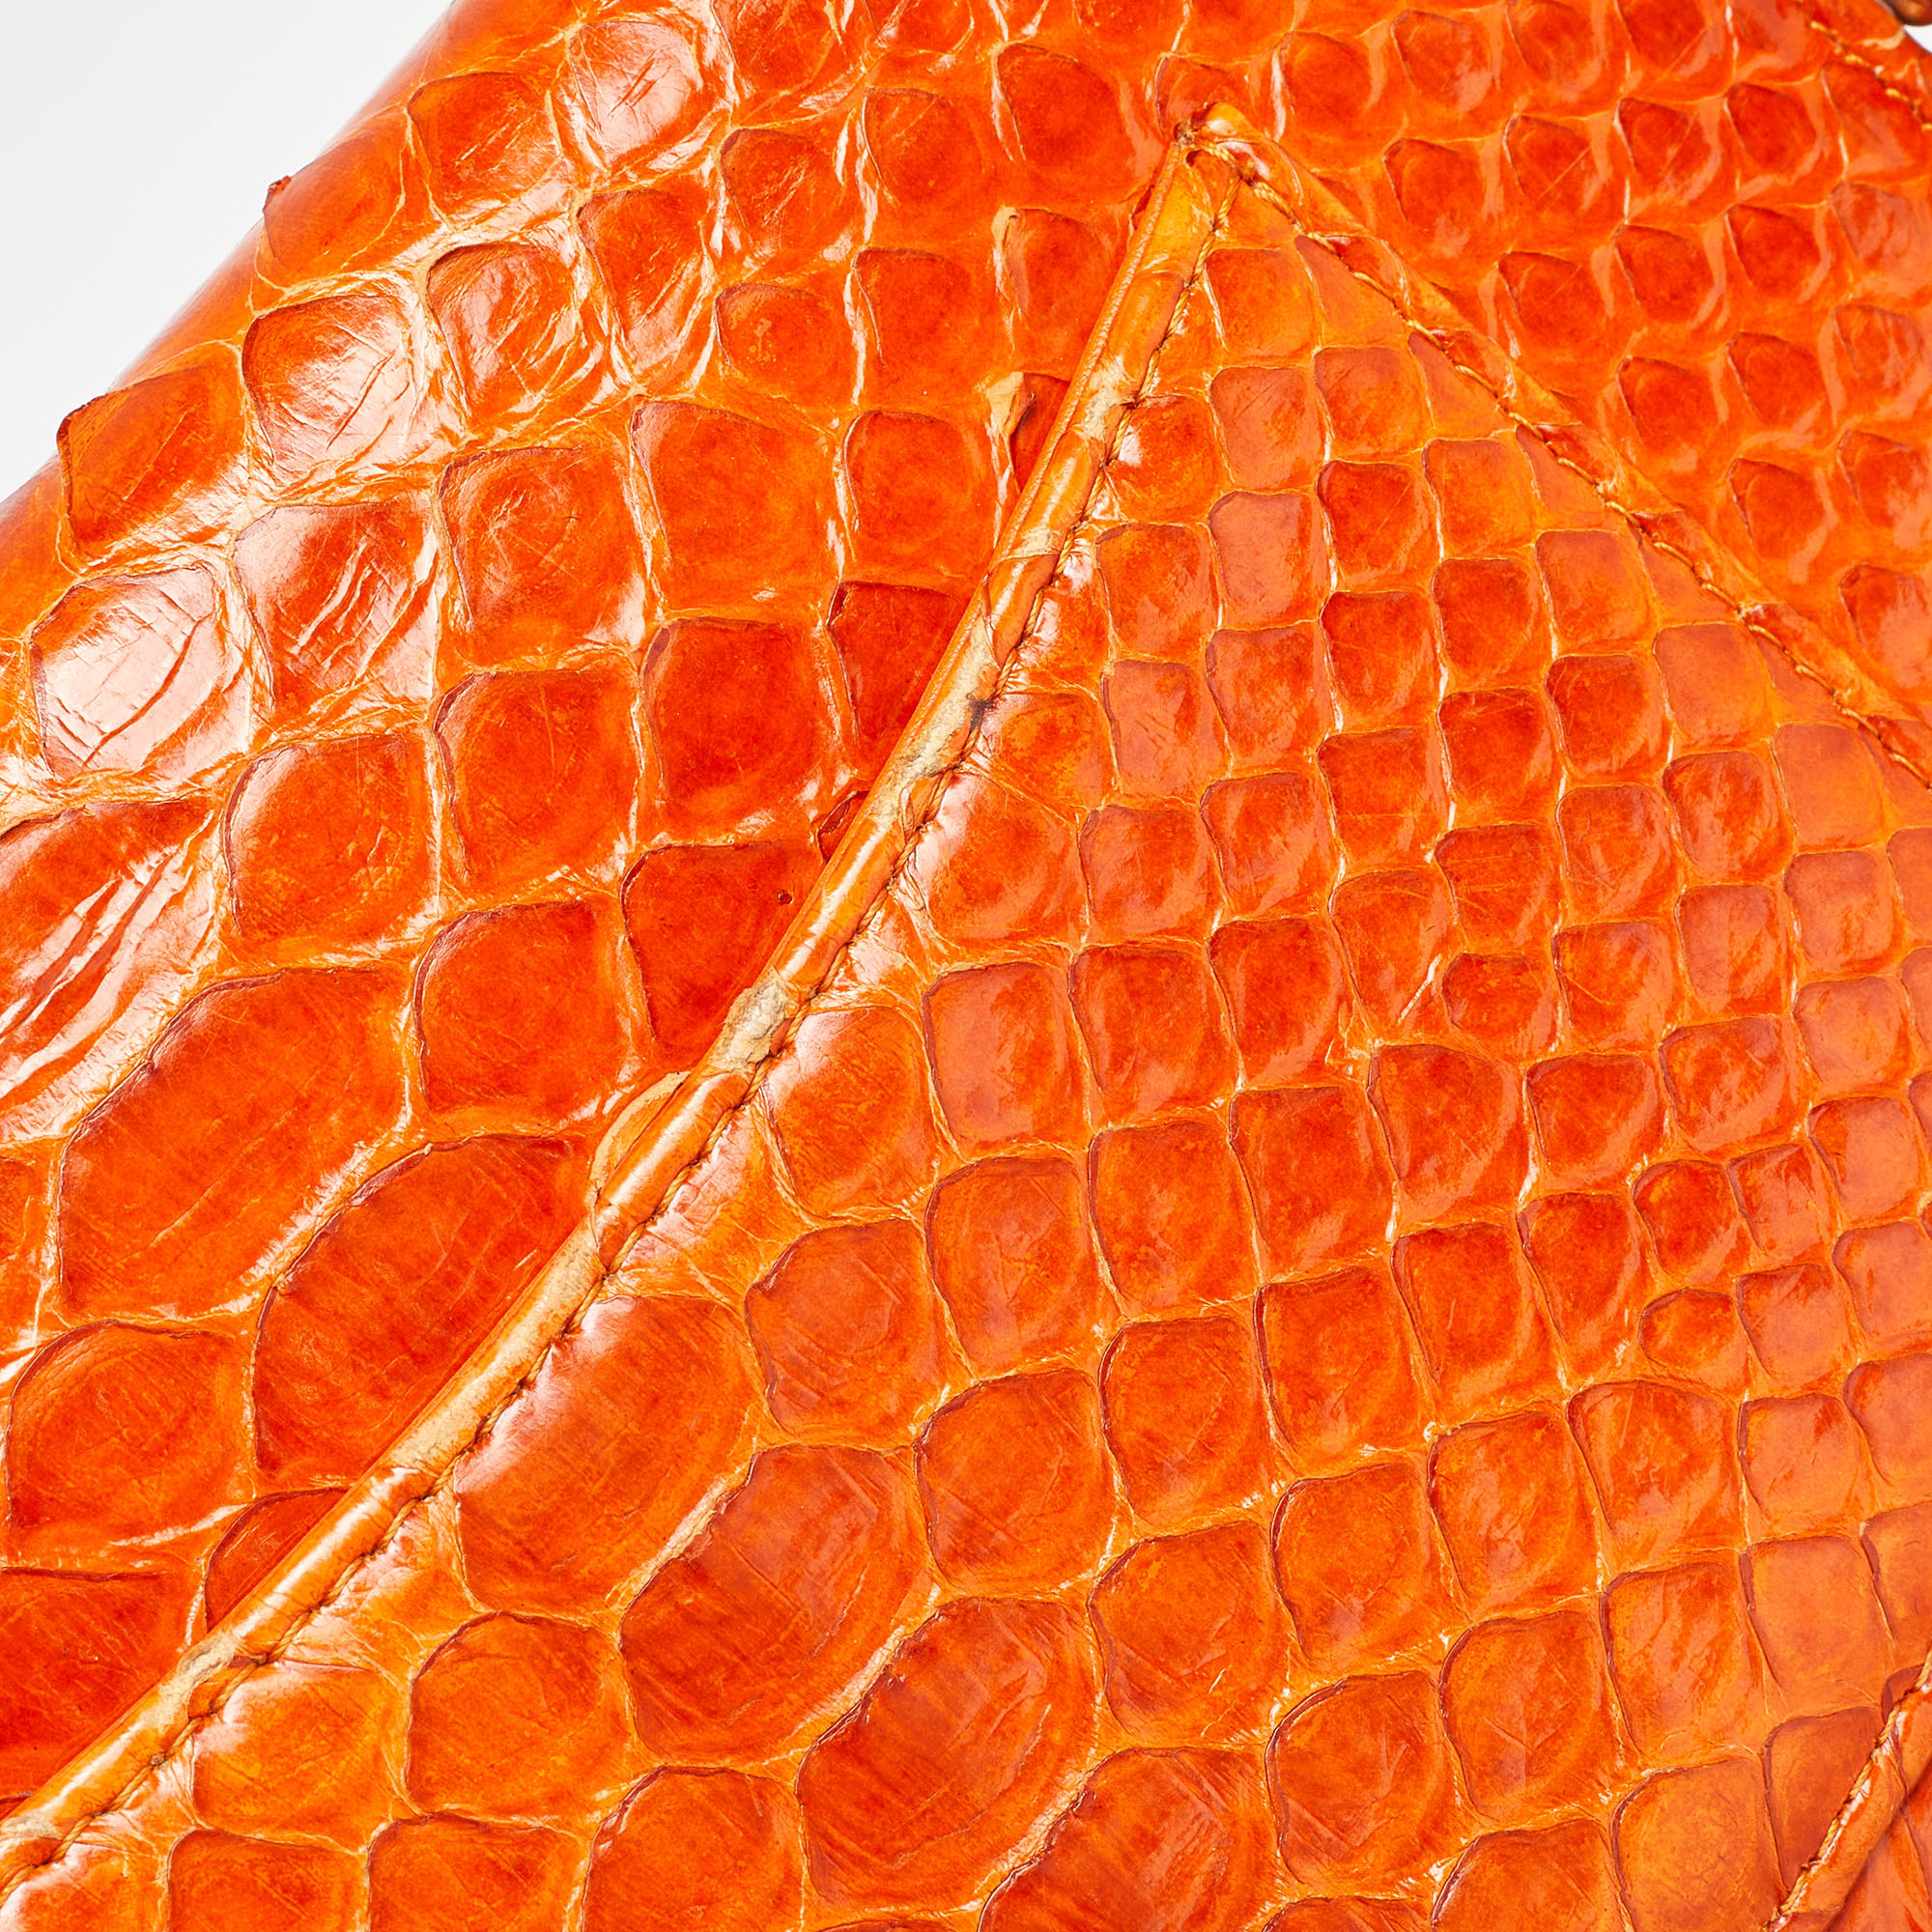 Chanel Orange Python Wallet On Chain